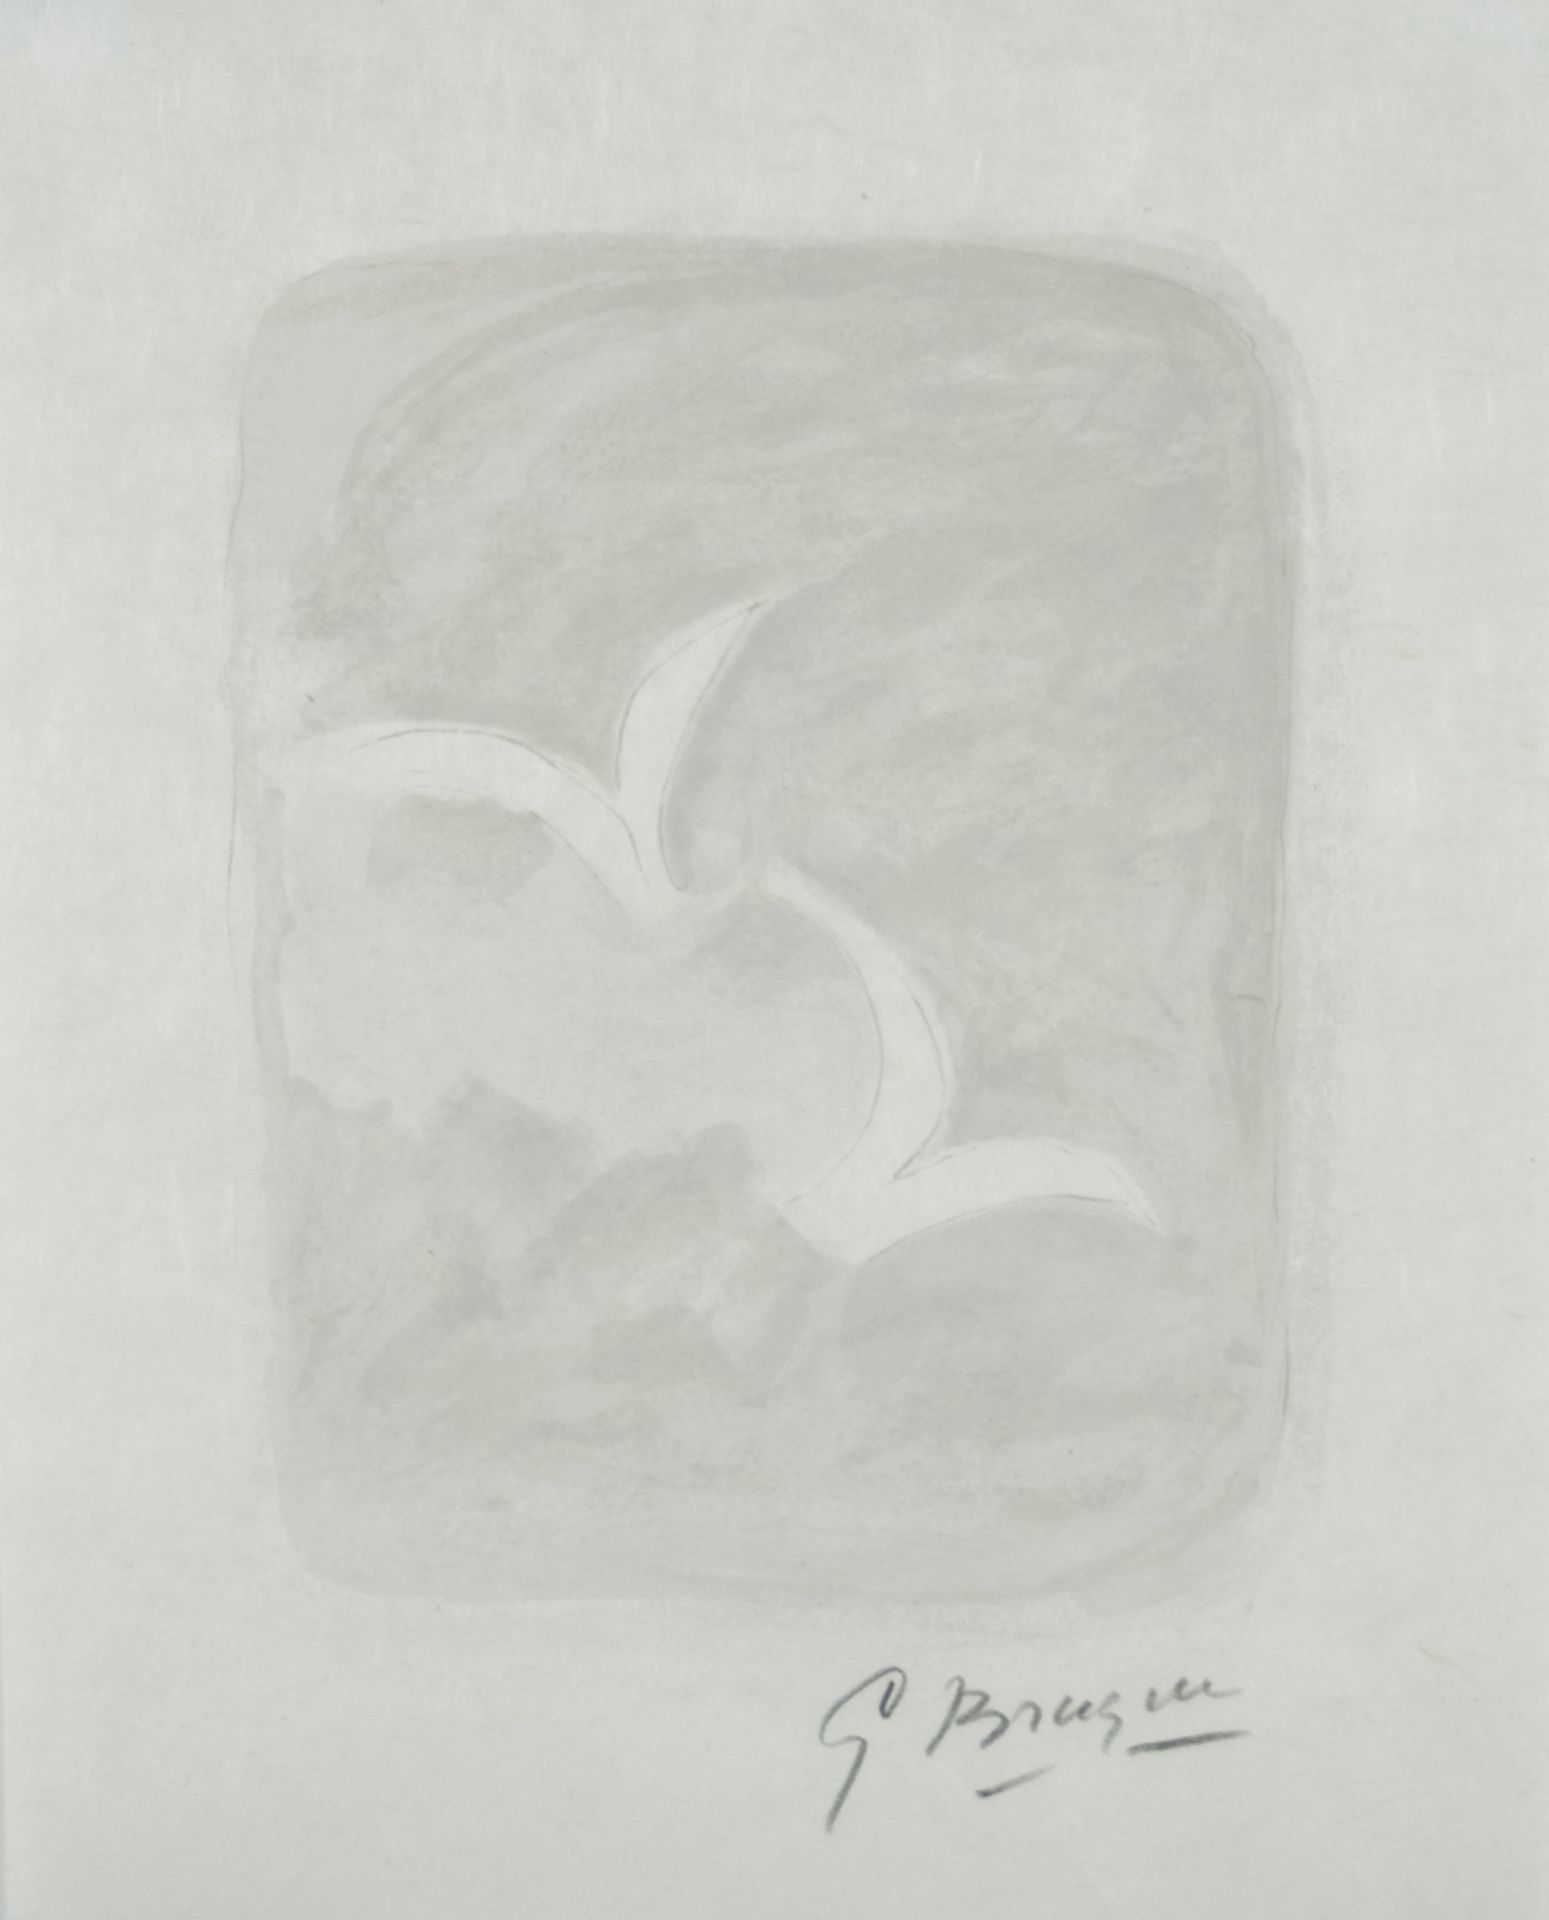 Georges Braque1881 Argenteuil - 1963 ParisBegann 1899 eine Lehre als Dekorationsmaler; besu